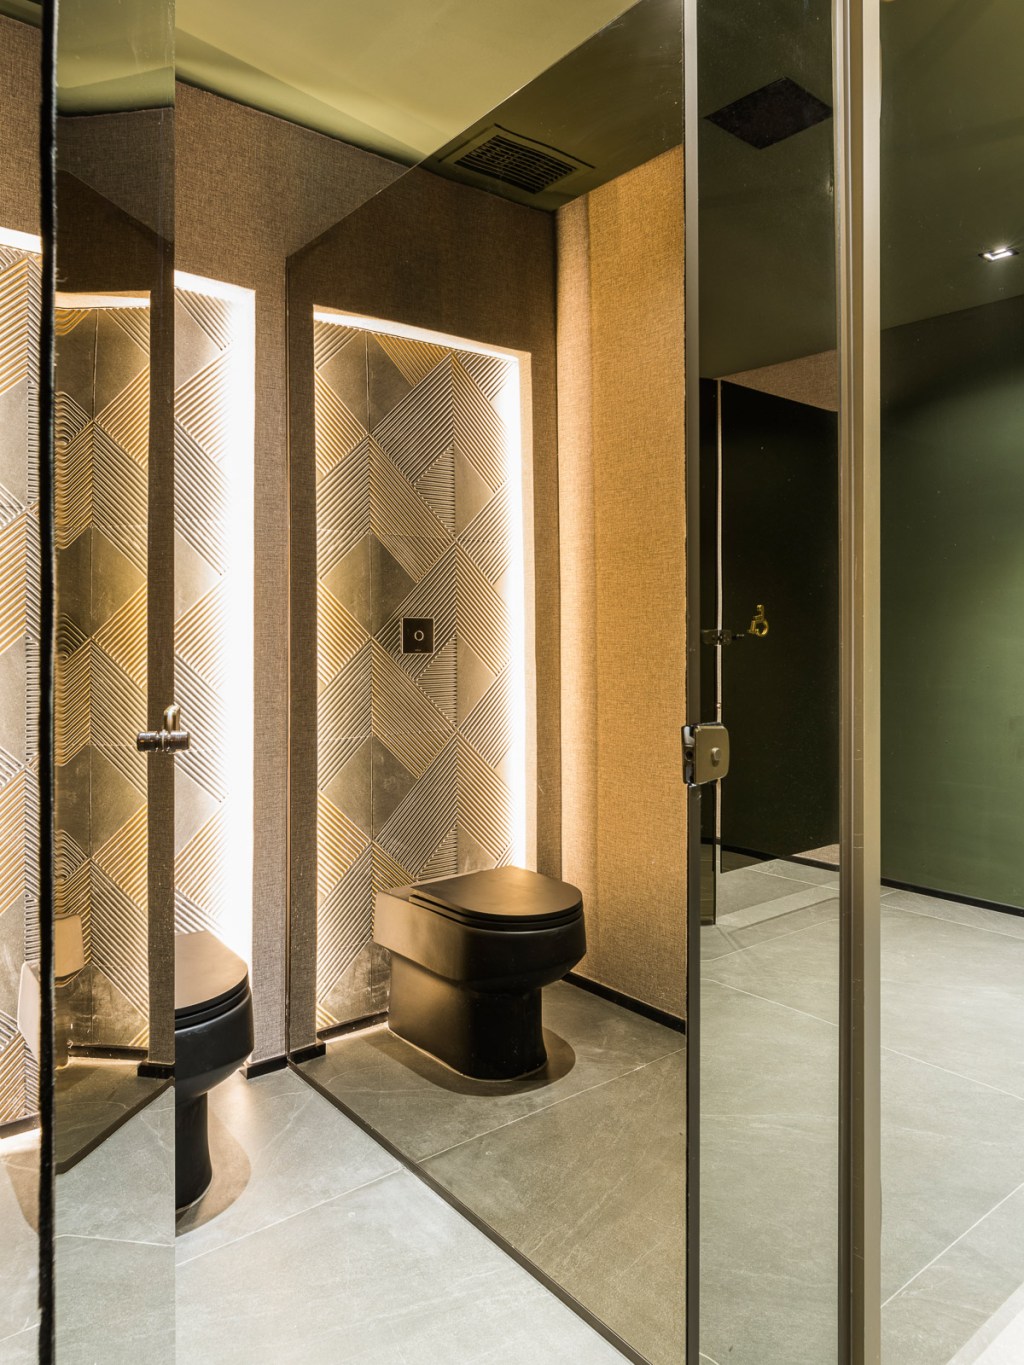 daiane antinolfi galeria restaurantes casacor sao paulo 2022 decoracao banheiro espelho